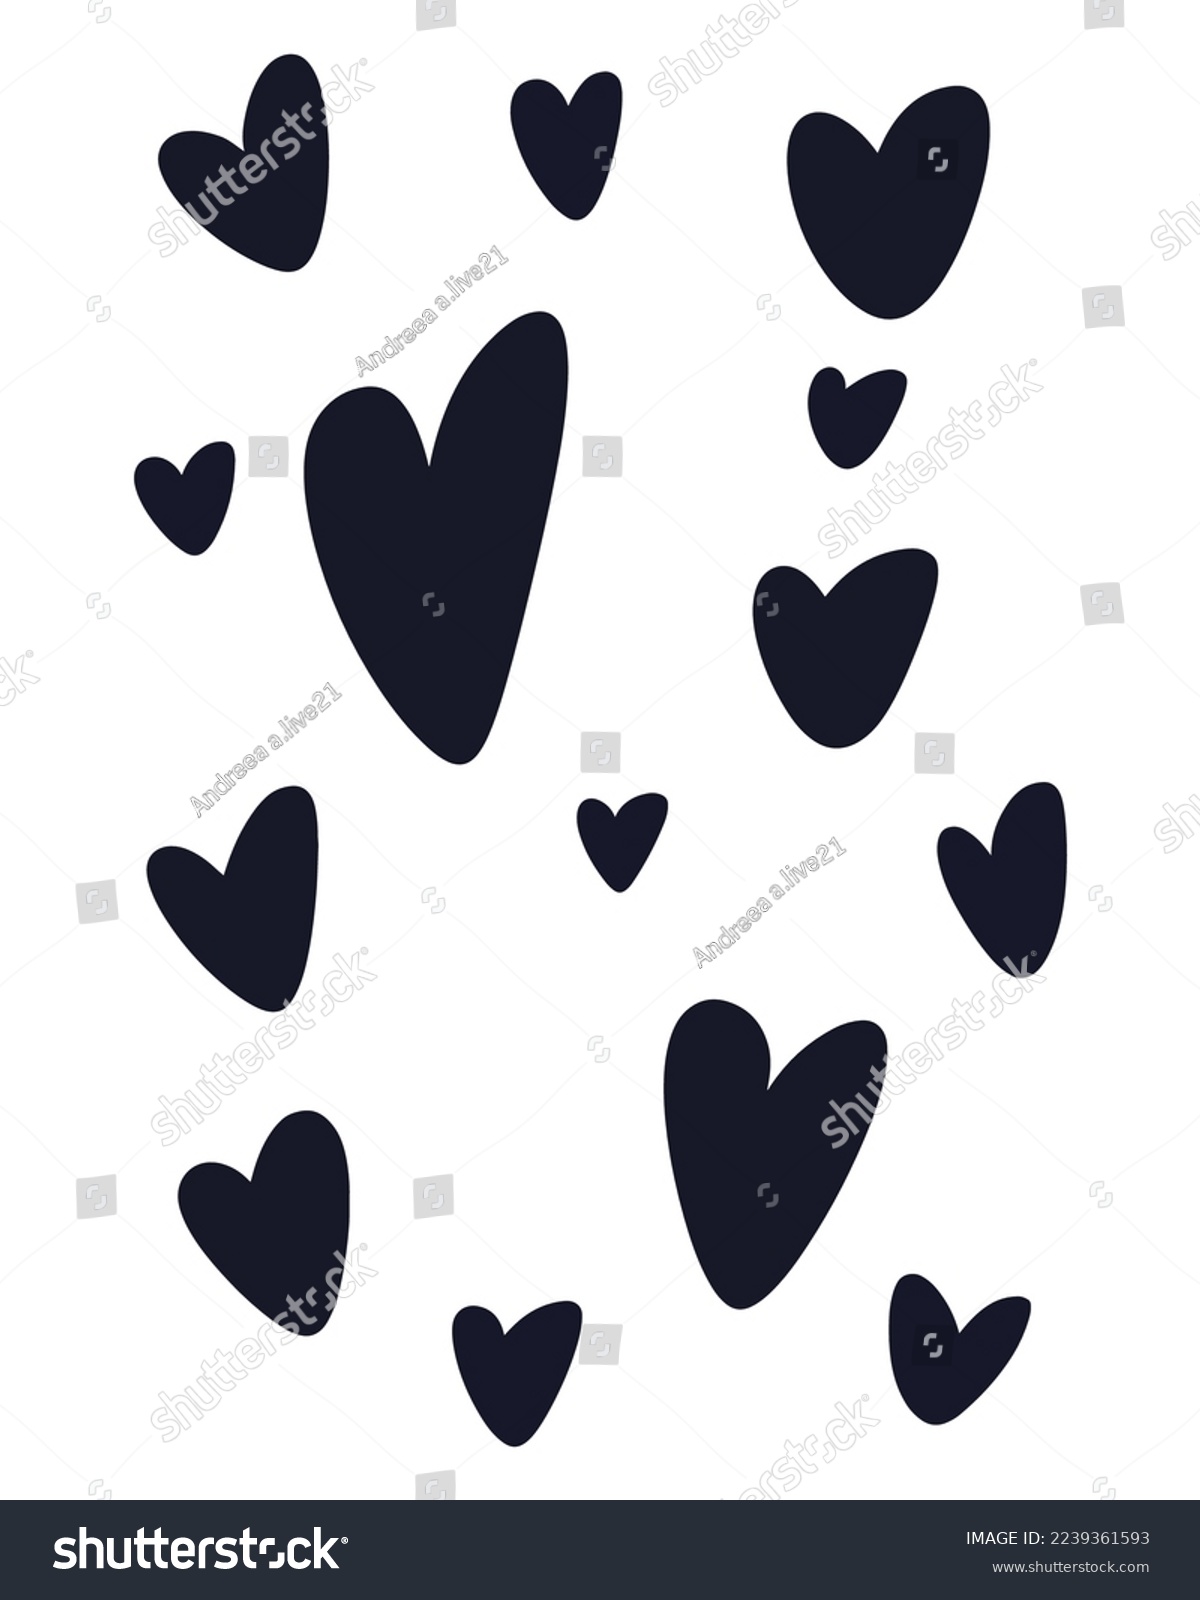 SVG of Valentine's Day Vector SVG, Doodle Hearts Illustration, Hearts Vectors, Love Illustration, Pink Black Hearts, Painted Hearts Illustration, Love Pattern
 svg